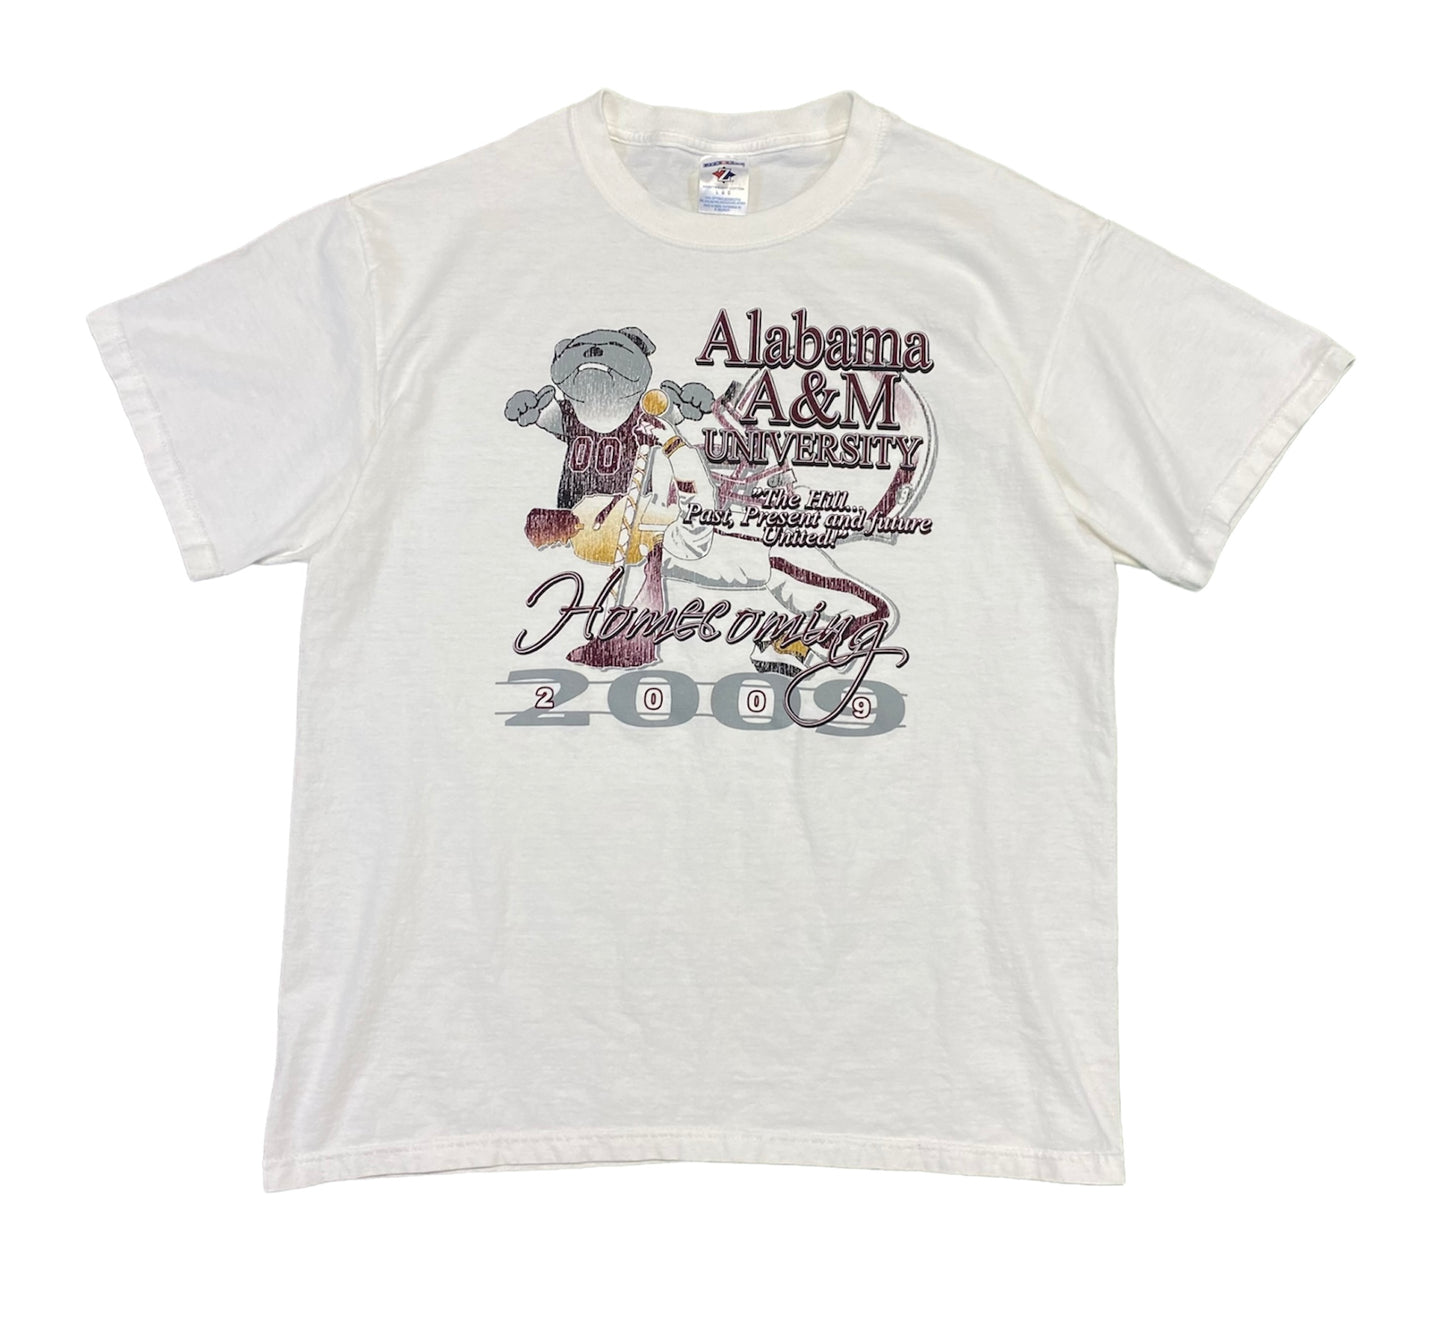 2009 Alabama A&M Homecoming T-Shirt